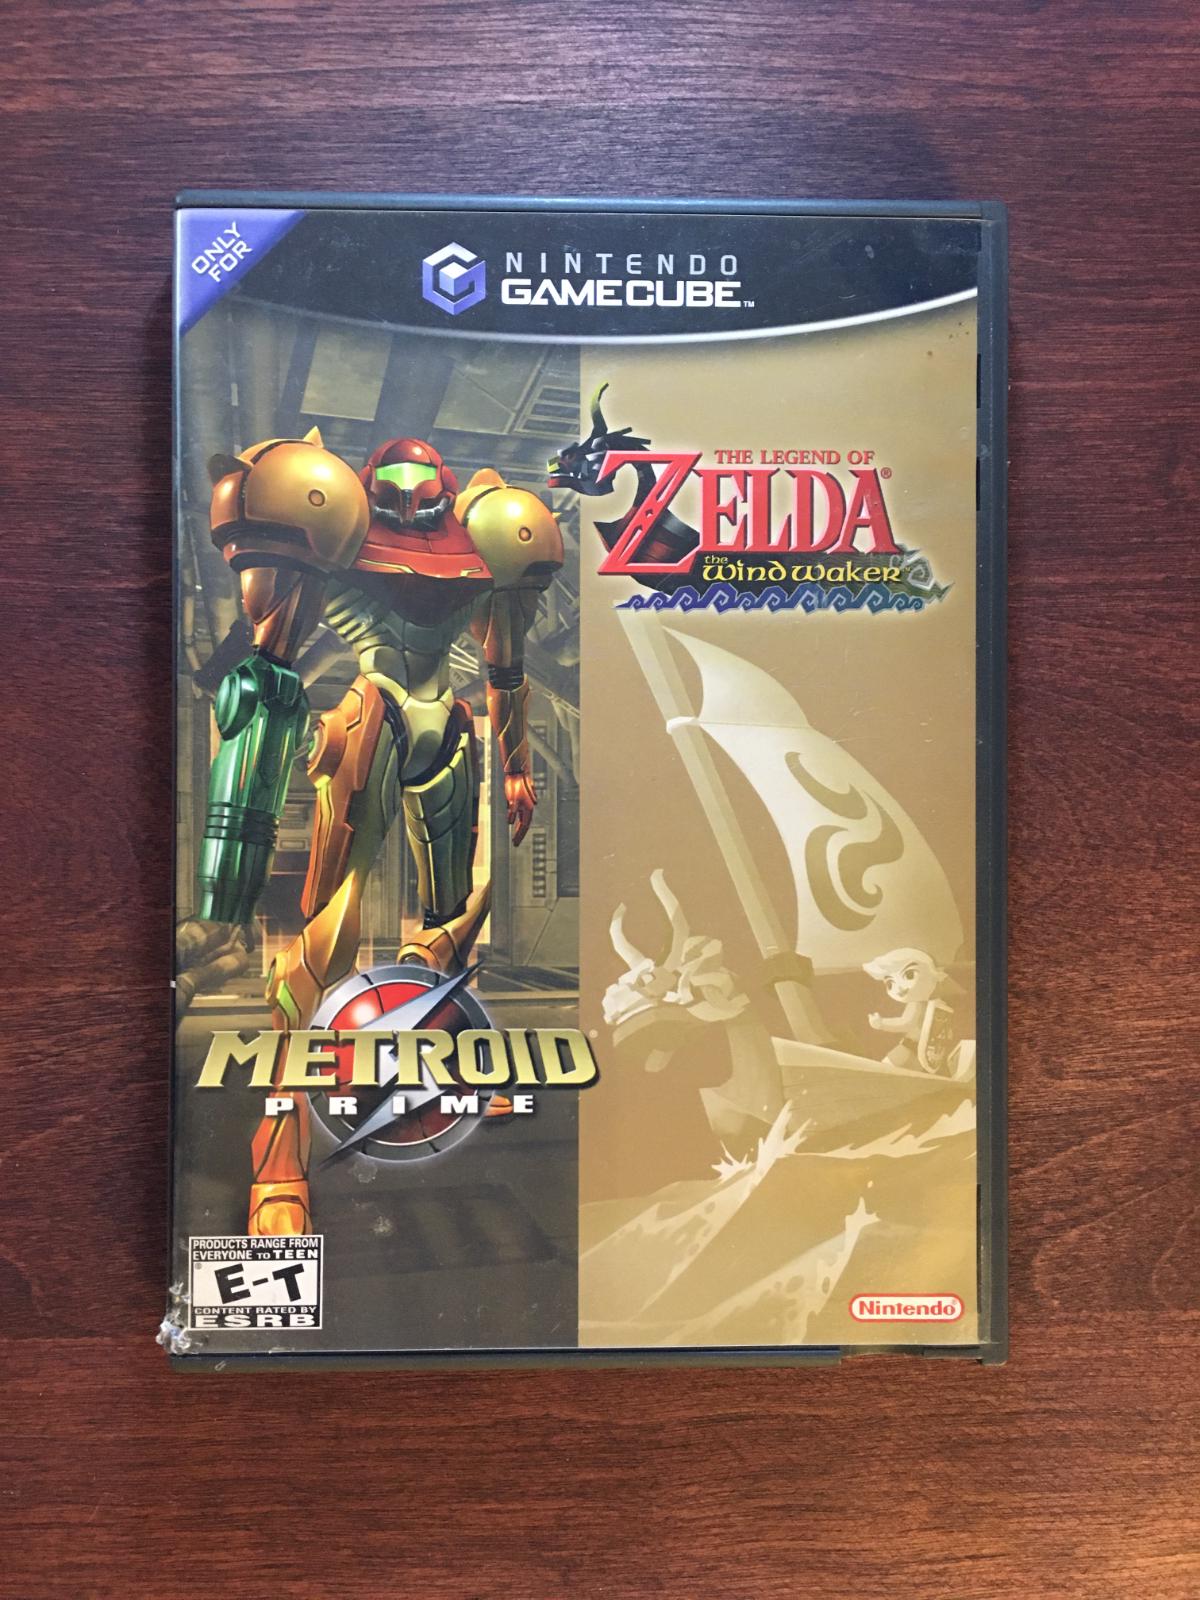 The Legend of Zelda: The Wind Waker / Metroid Prime, Nintendo